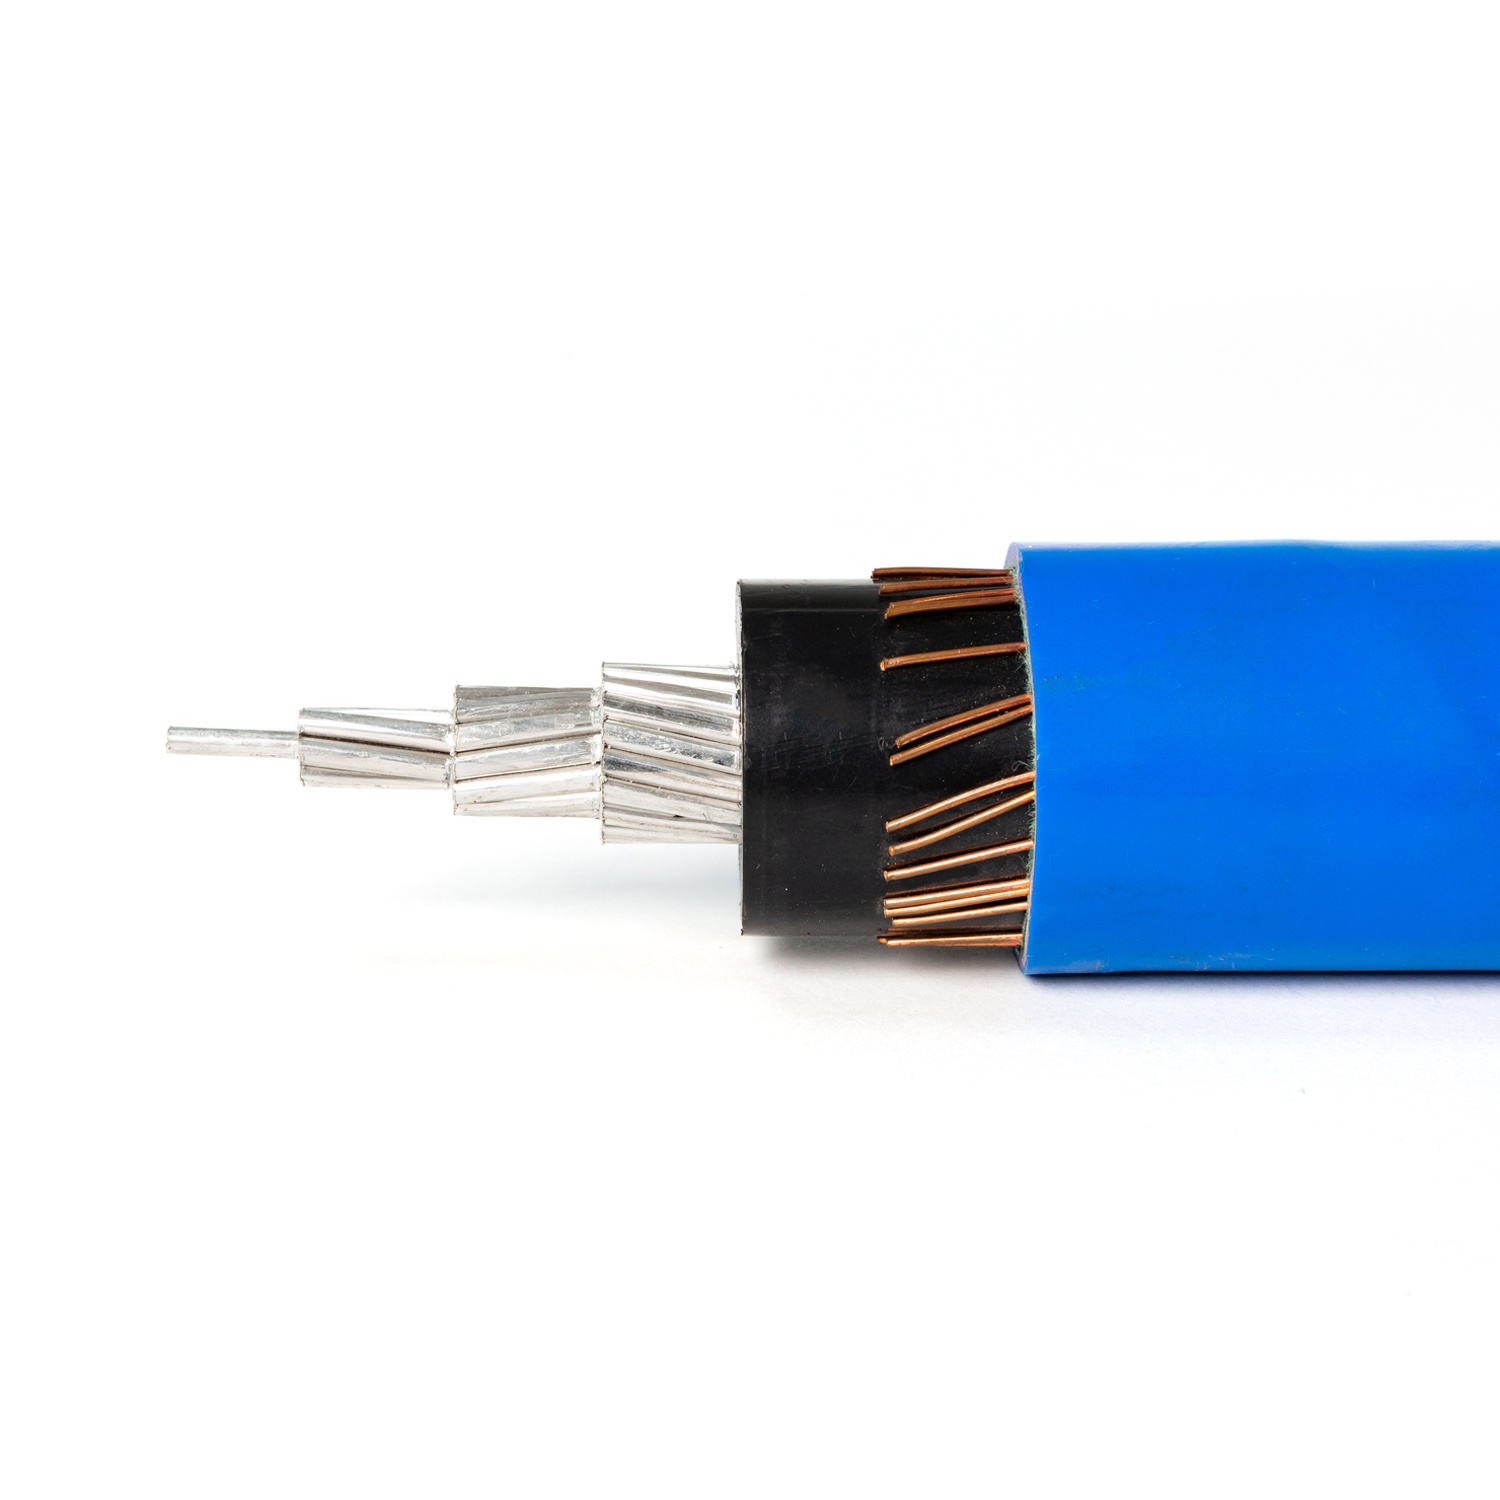 
                câble d′alimentation moyenne tension 11kv al XLPE blindé S/C 240 mm2
            